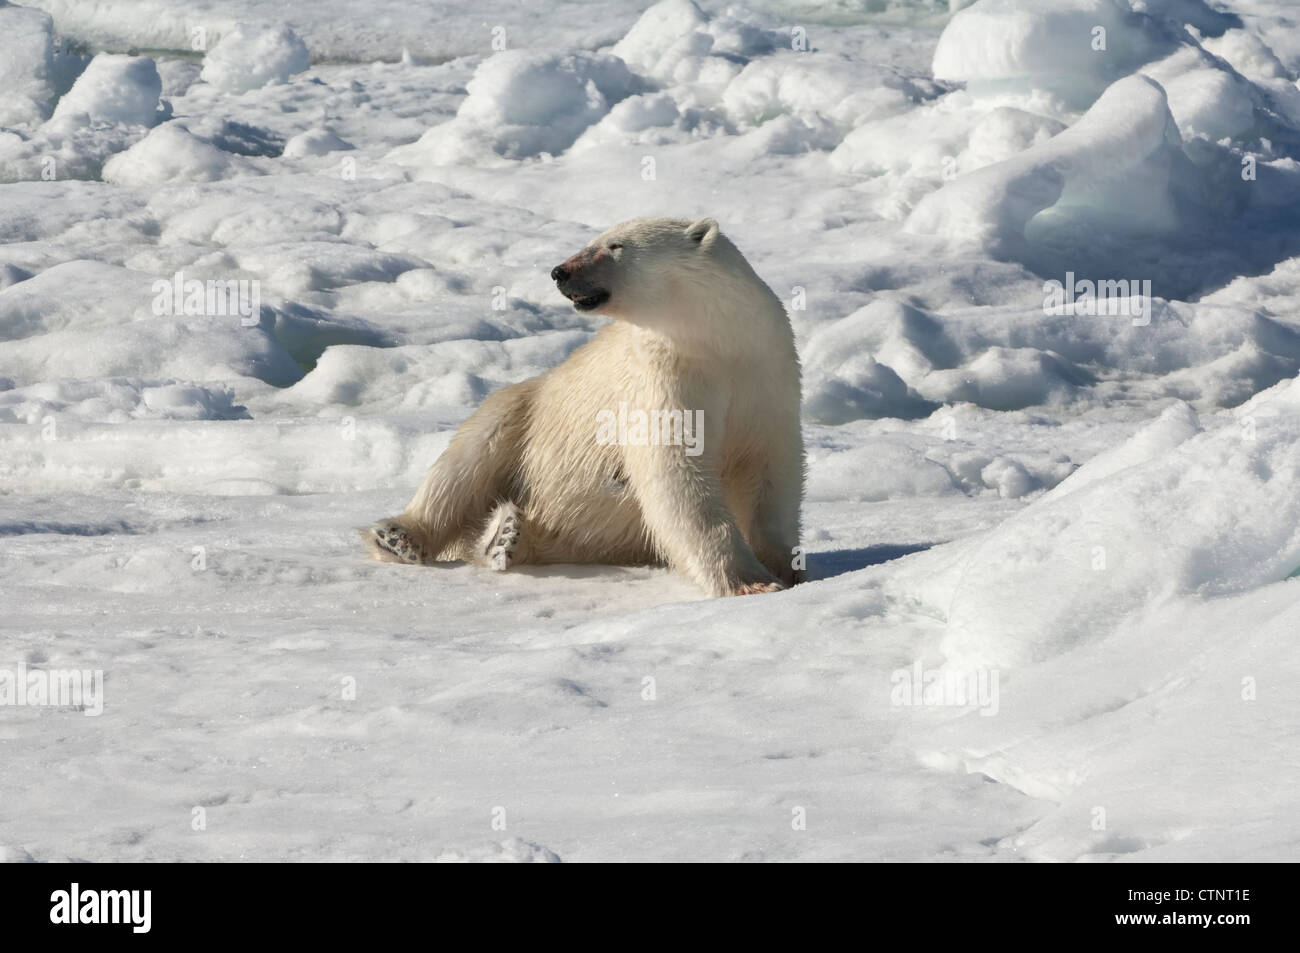 Femme ours polaire (Ursus maritimus) s'étend après un kill, archipel du Svalbard, mer de Barents, Norvège Banque D'Images